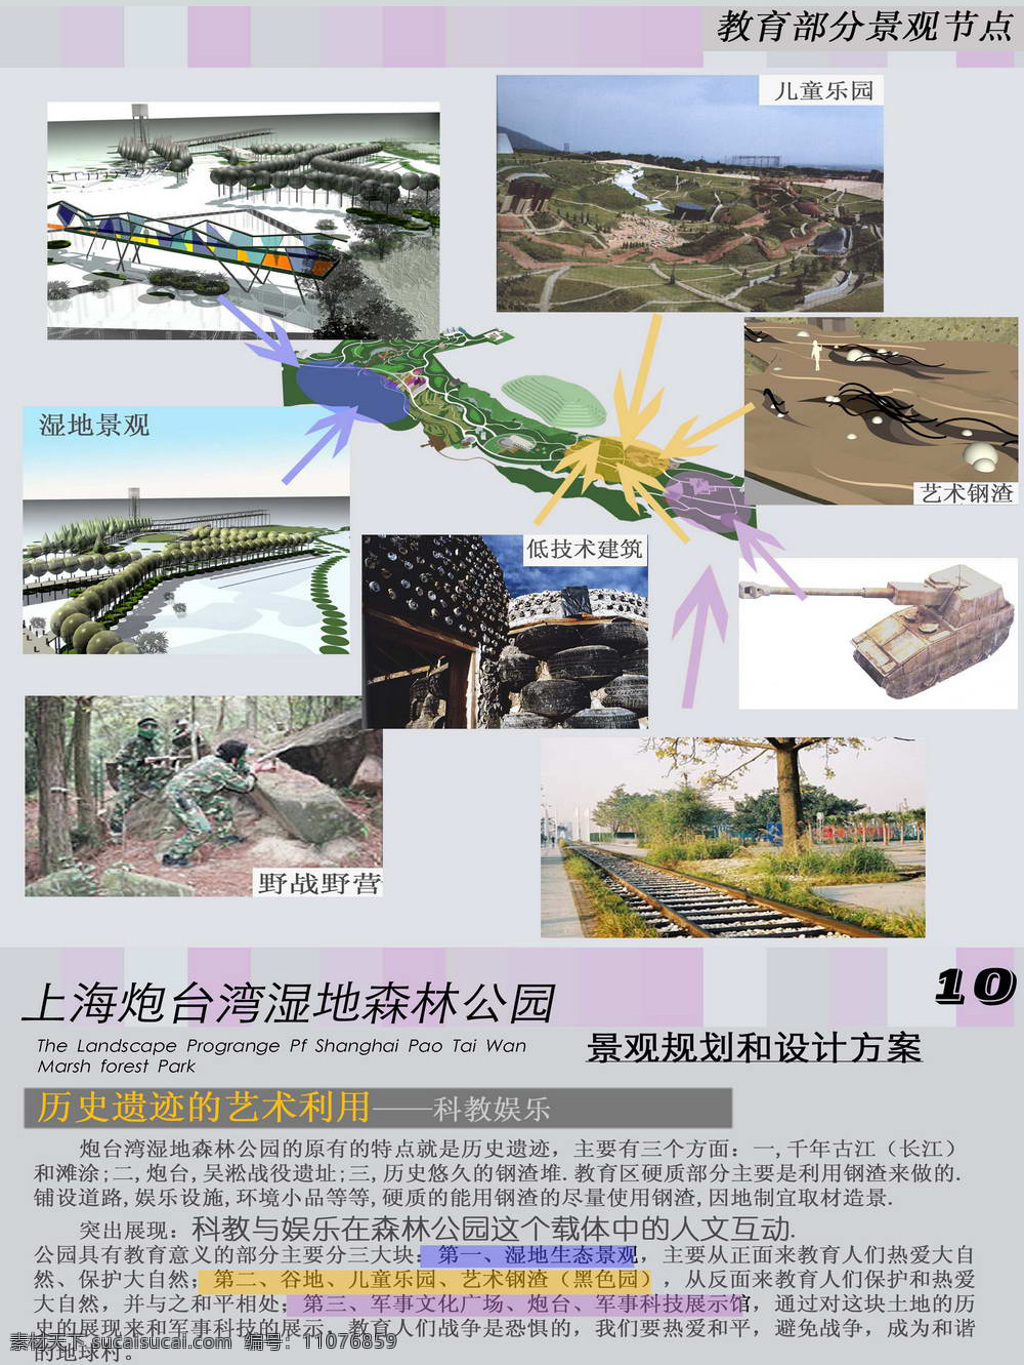 上海 炮台 湾 湿地 公园 规划 设计图 张 建筑设计 图纸 炮台湾 景观规划 cad素材 建筑图纸